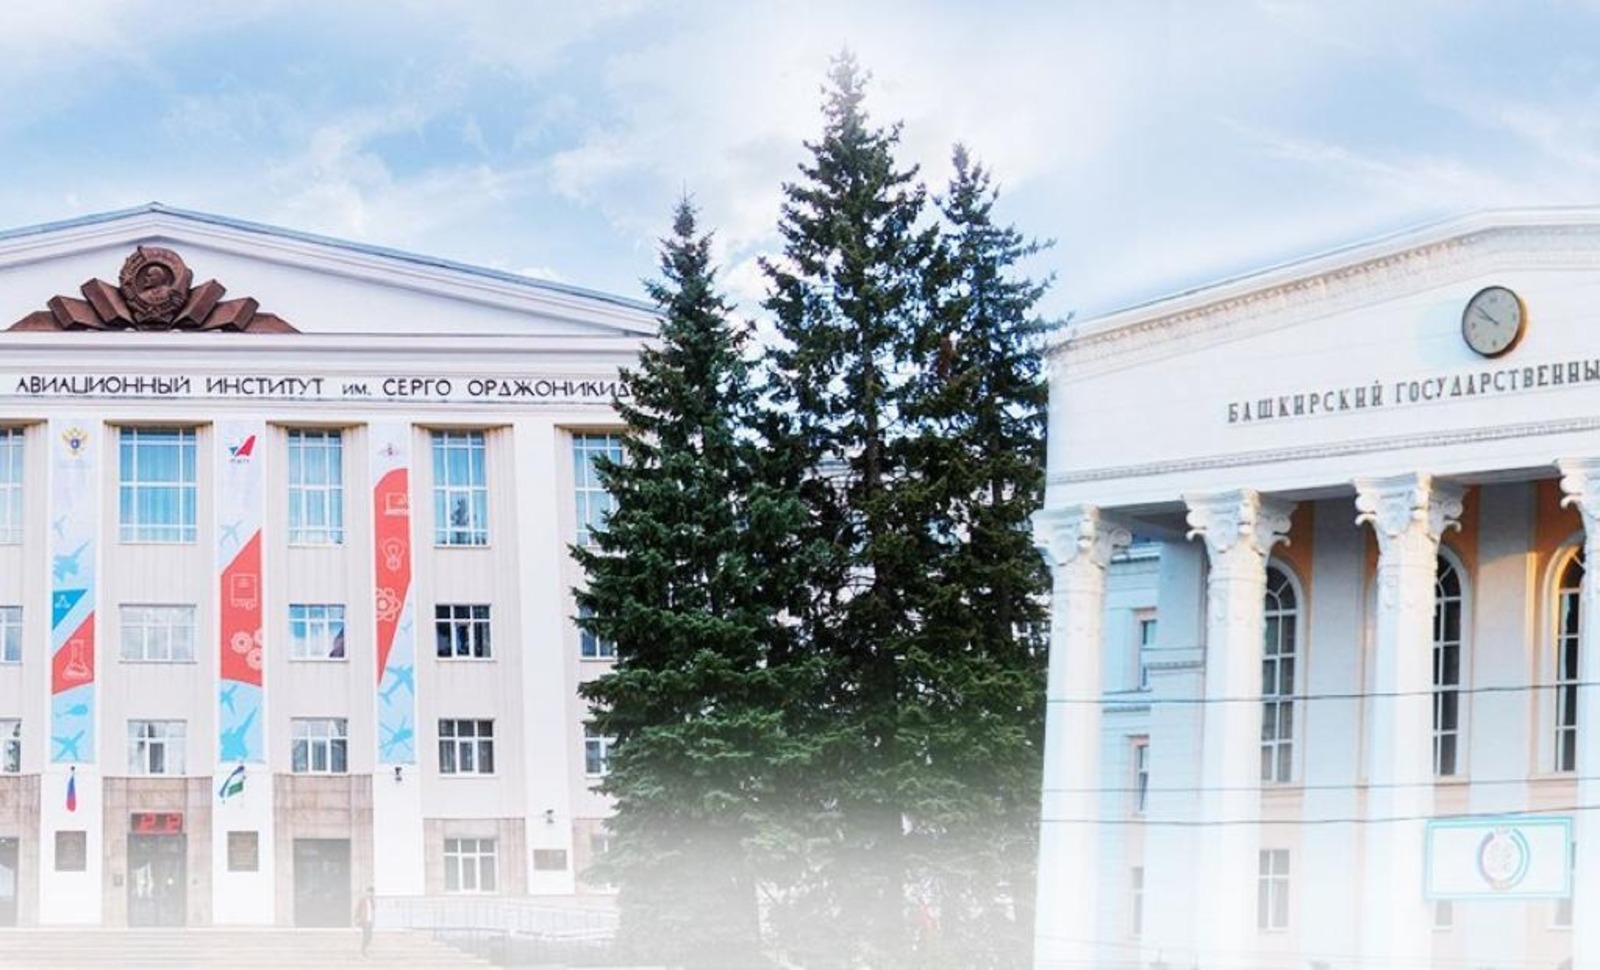 Уфимский университет науки и технологий